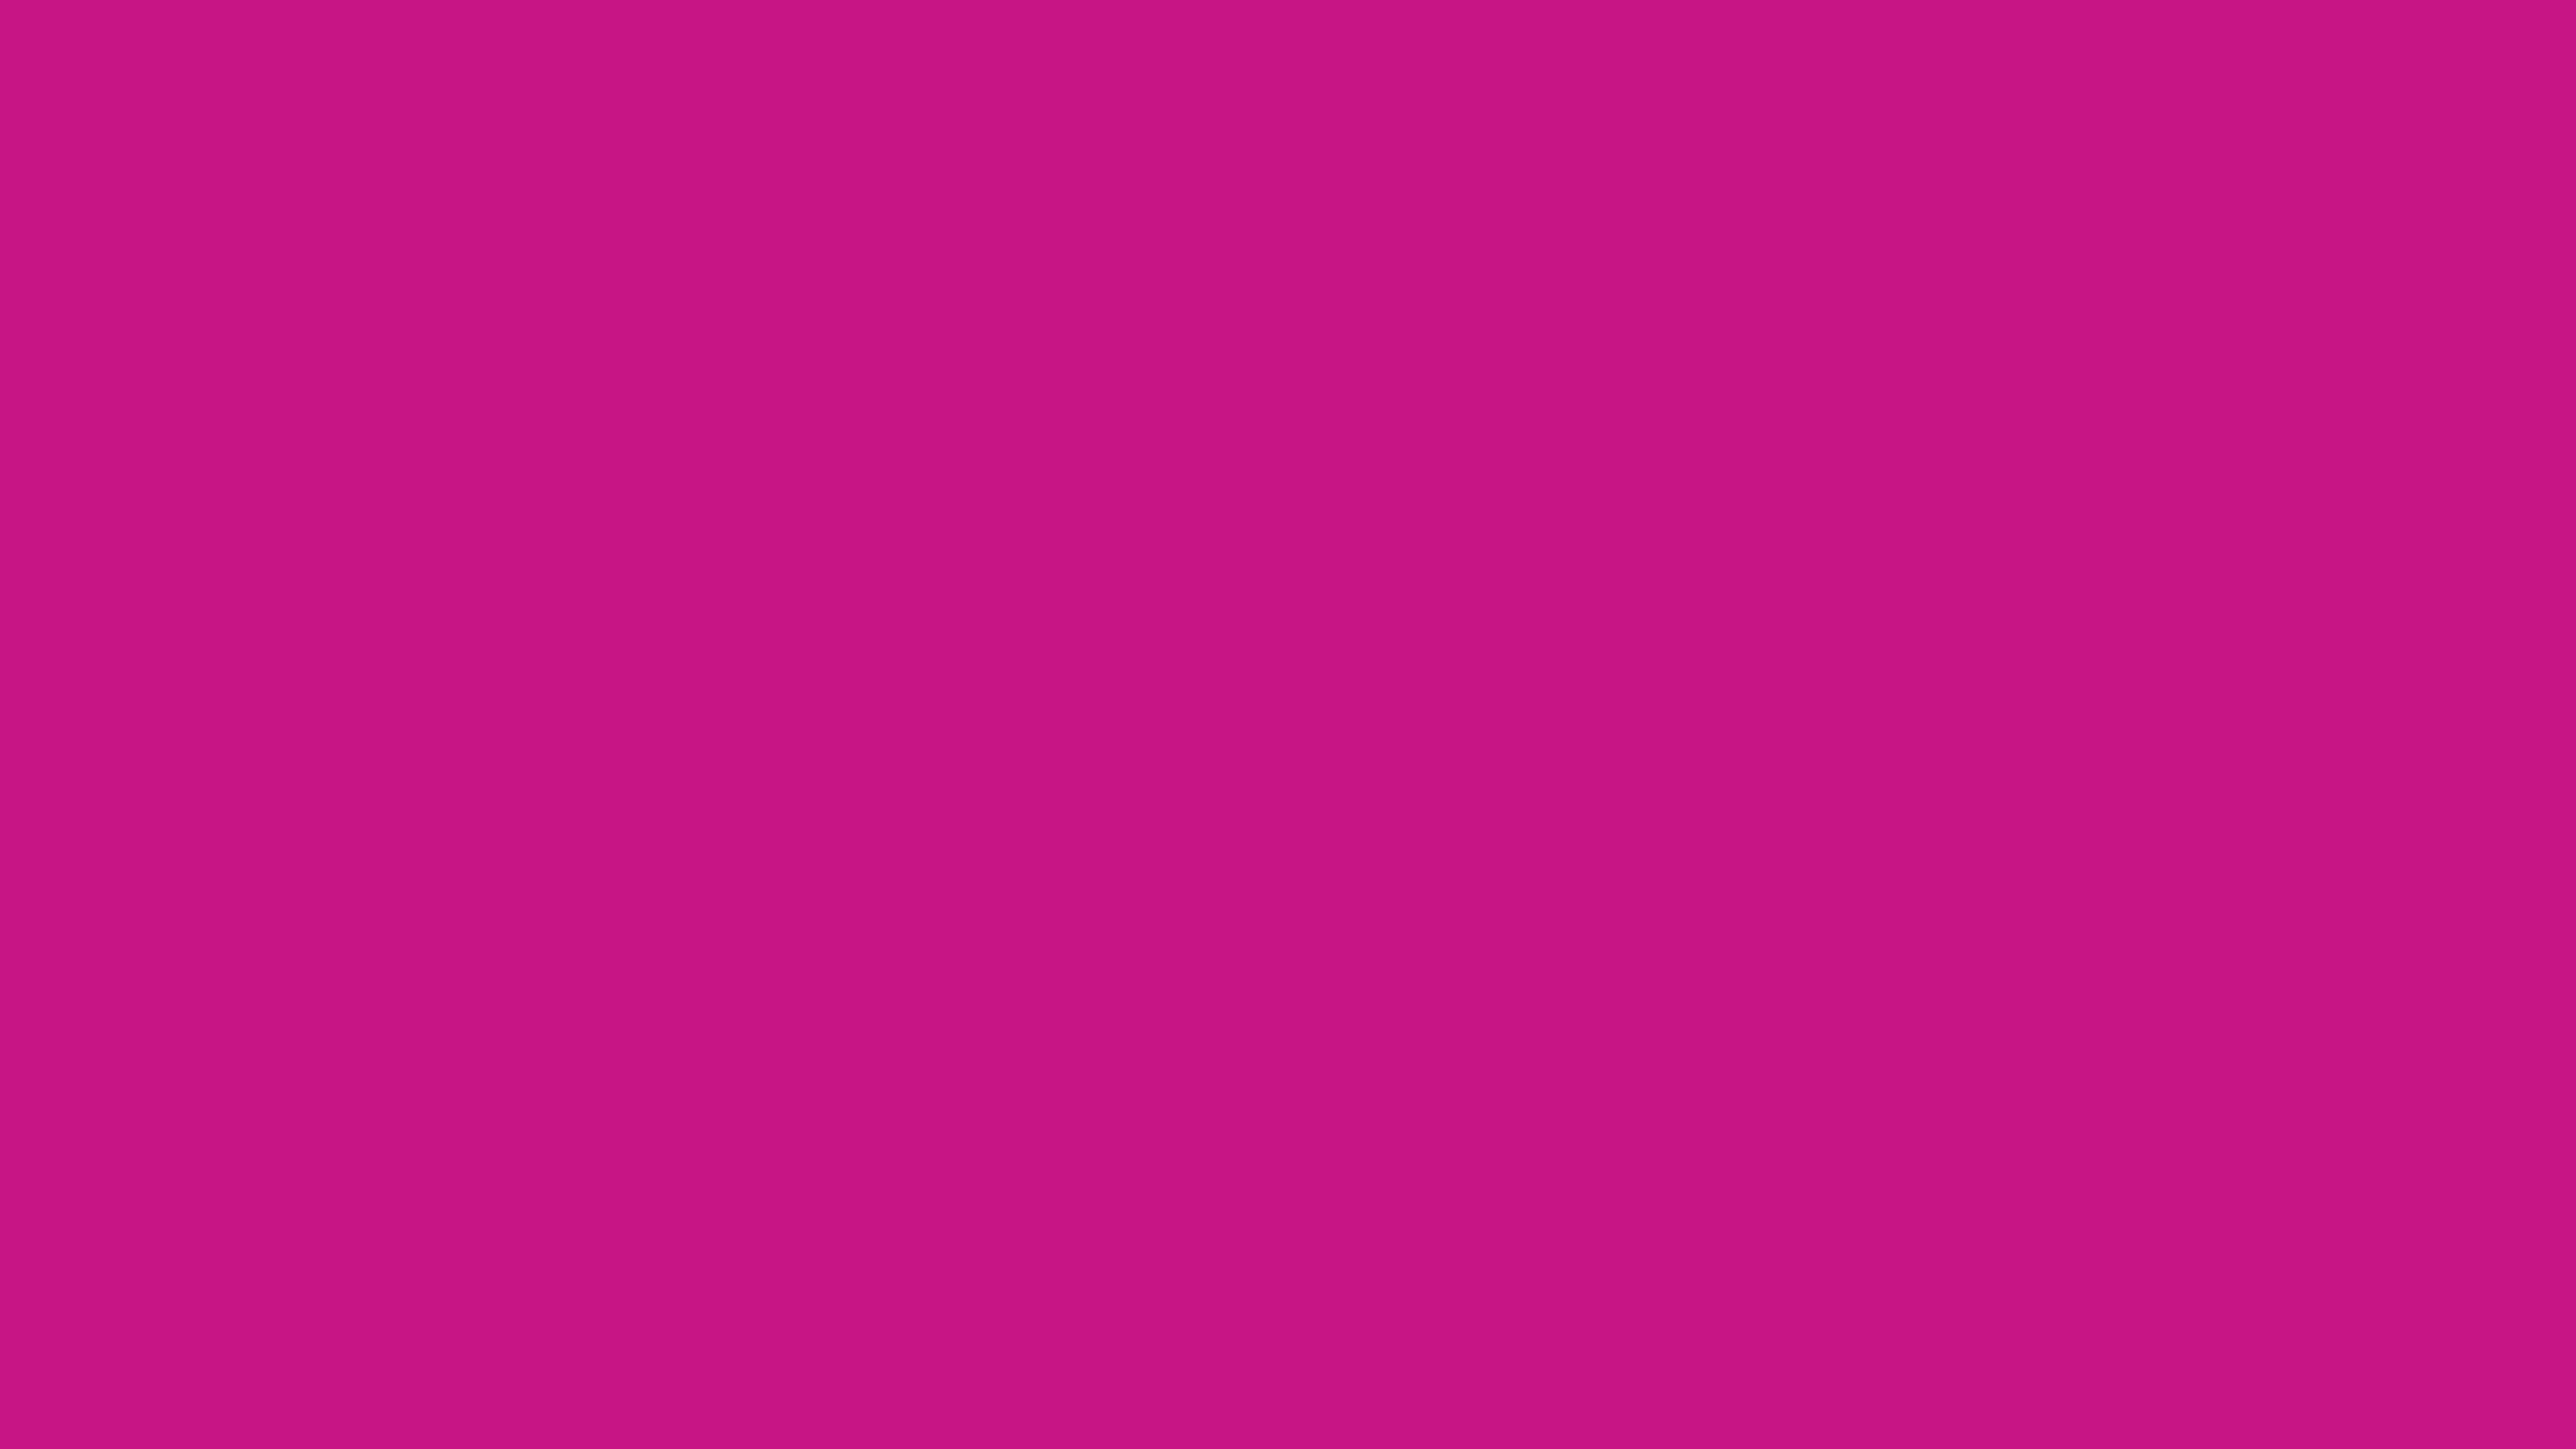 7680x4320 Medium Violet-red Solid Color Background